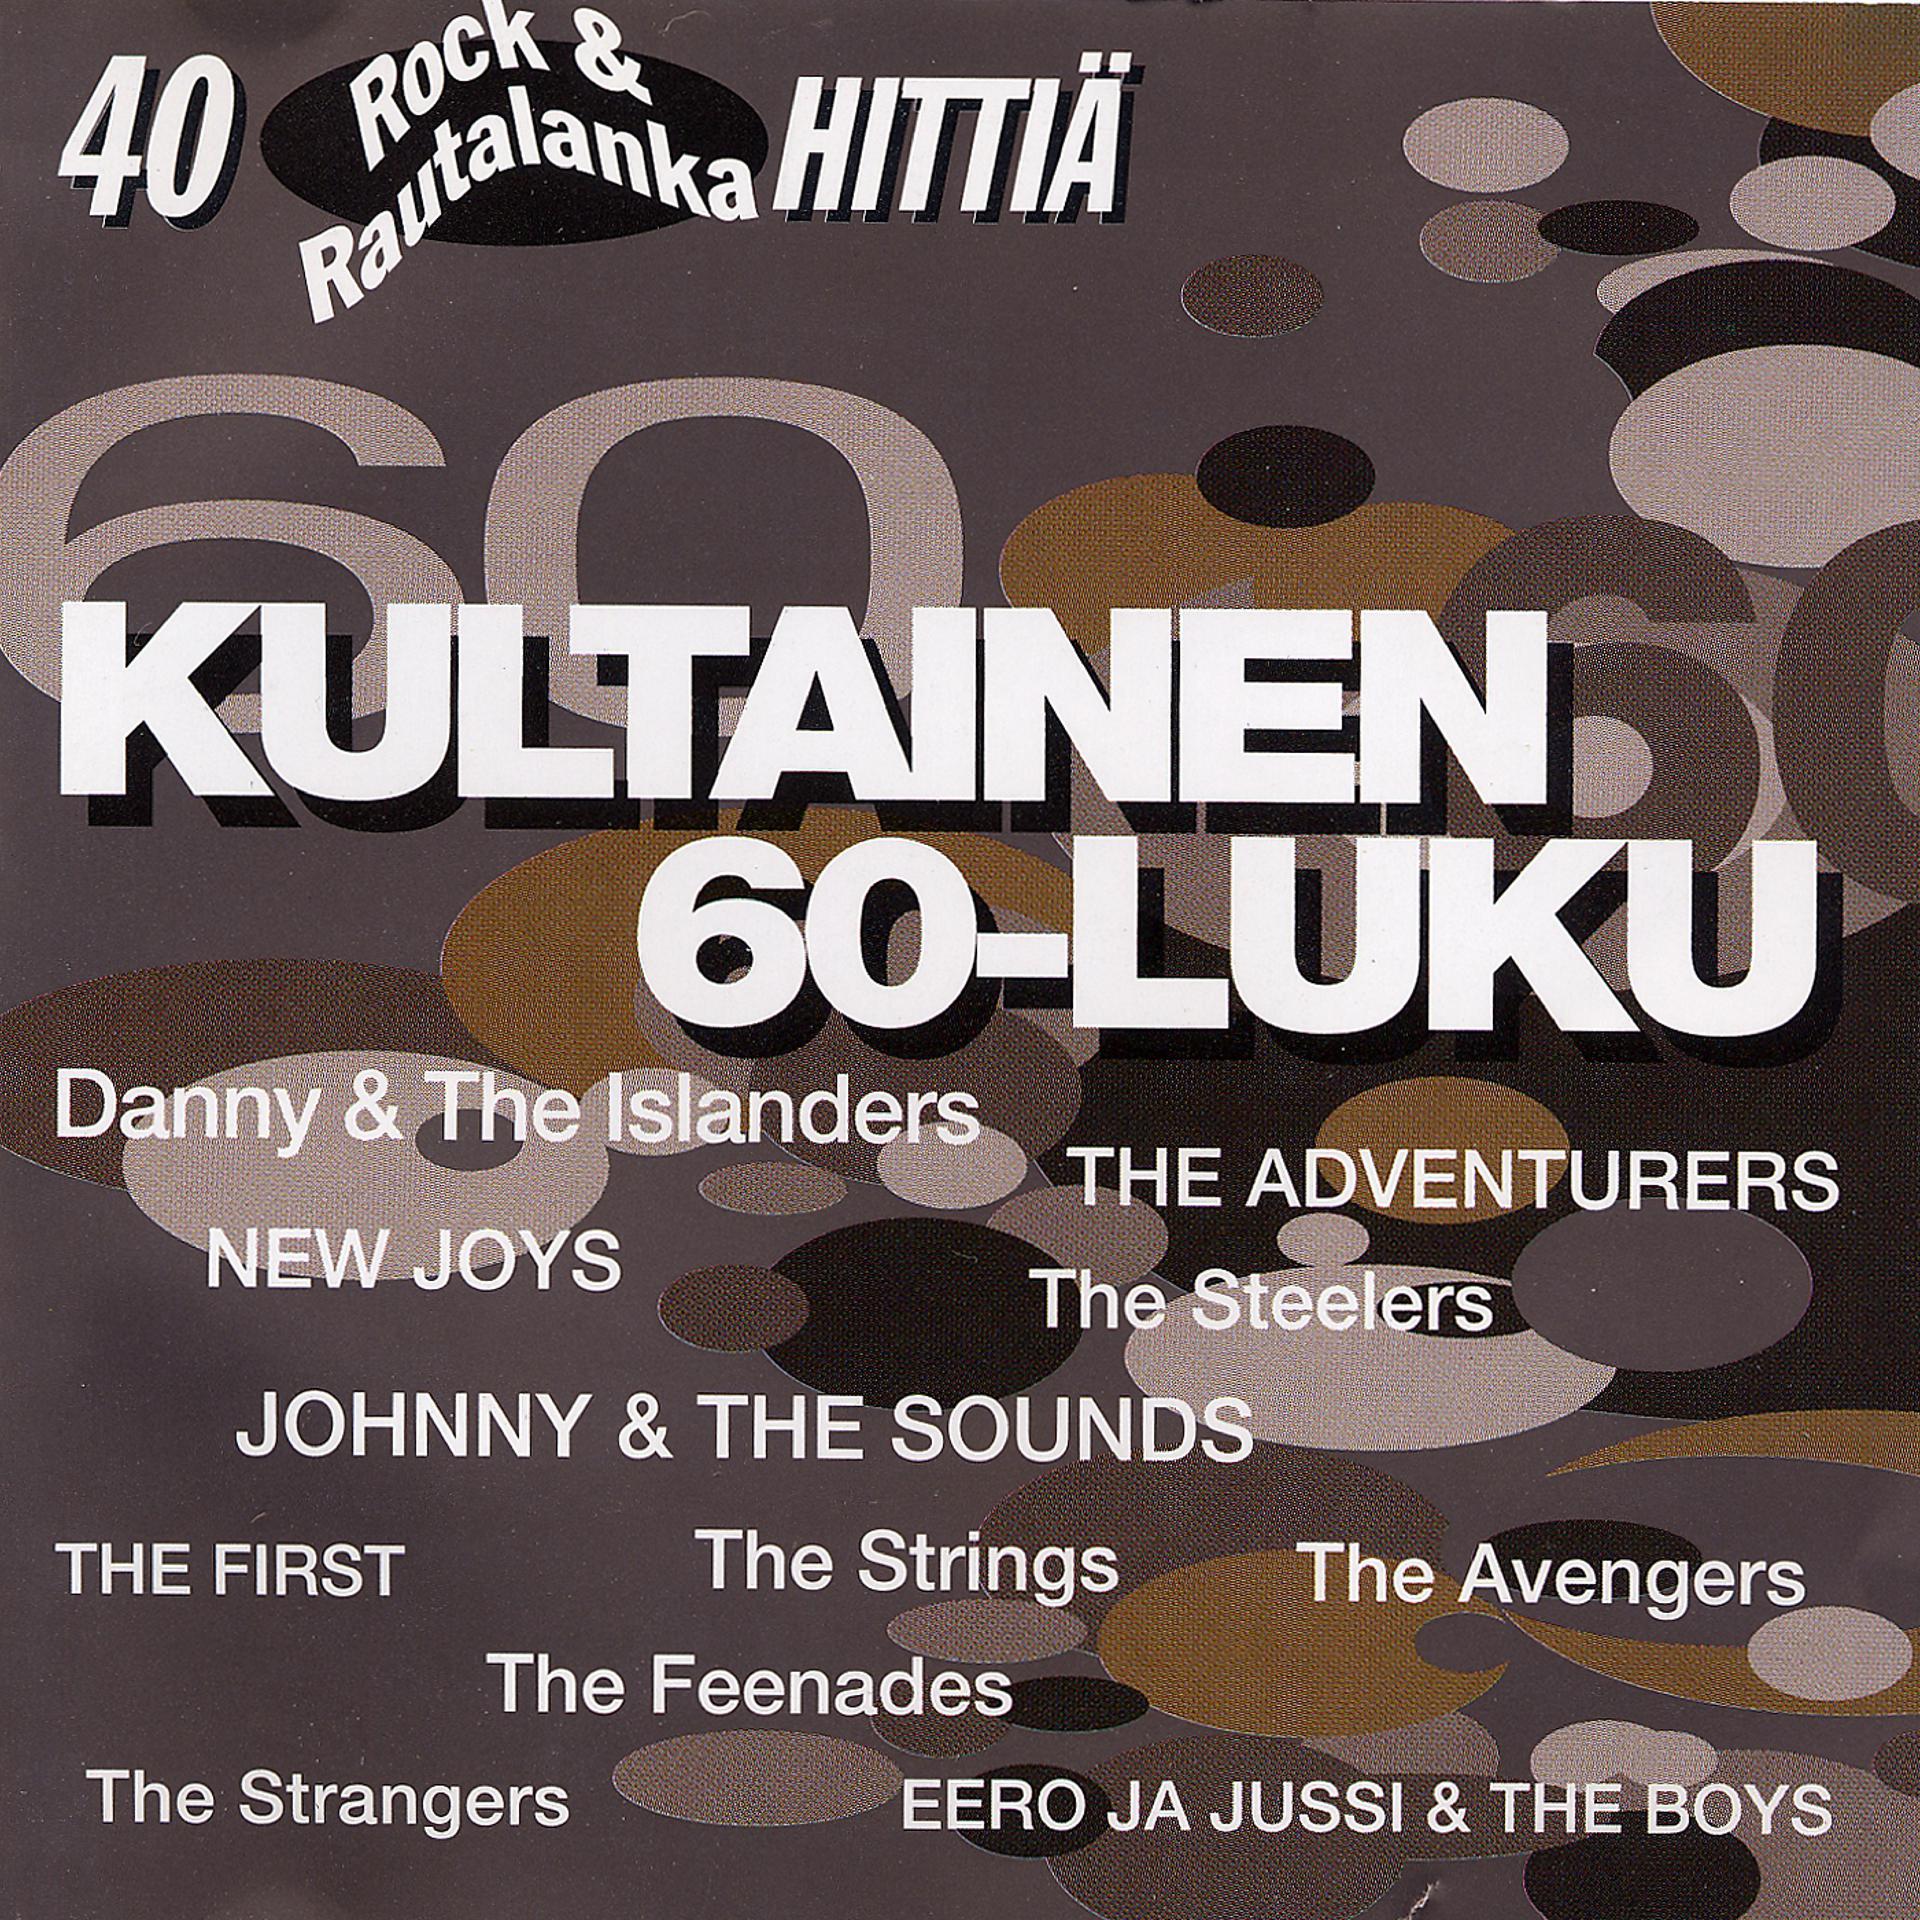 Постер альбома Kultainen 60-luku - 40 Rock & Rautalanka hittiä